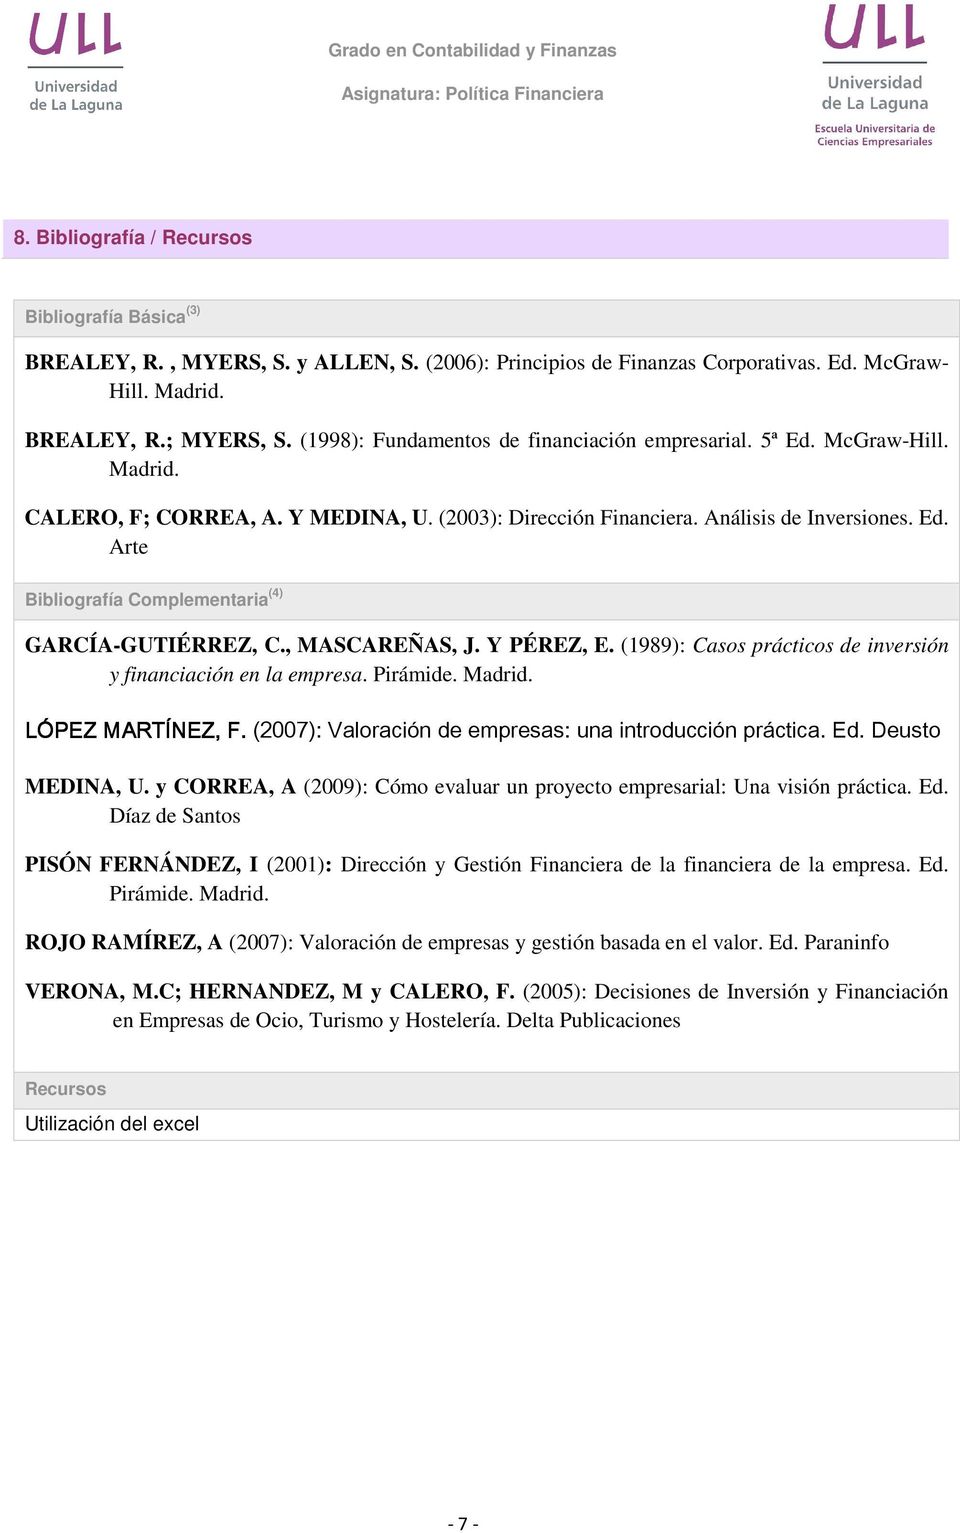 , MASCAREÑAS, J. Y PÉREZ, E. (1989): Casos prácticos de inversión y financiación en la empresa. Pirámide. Madrid. LÓPEZ MARTÍNEZ, F. (2007): Valoración de empresas: una introducción práctica. Ed.